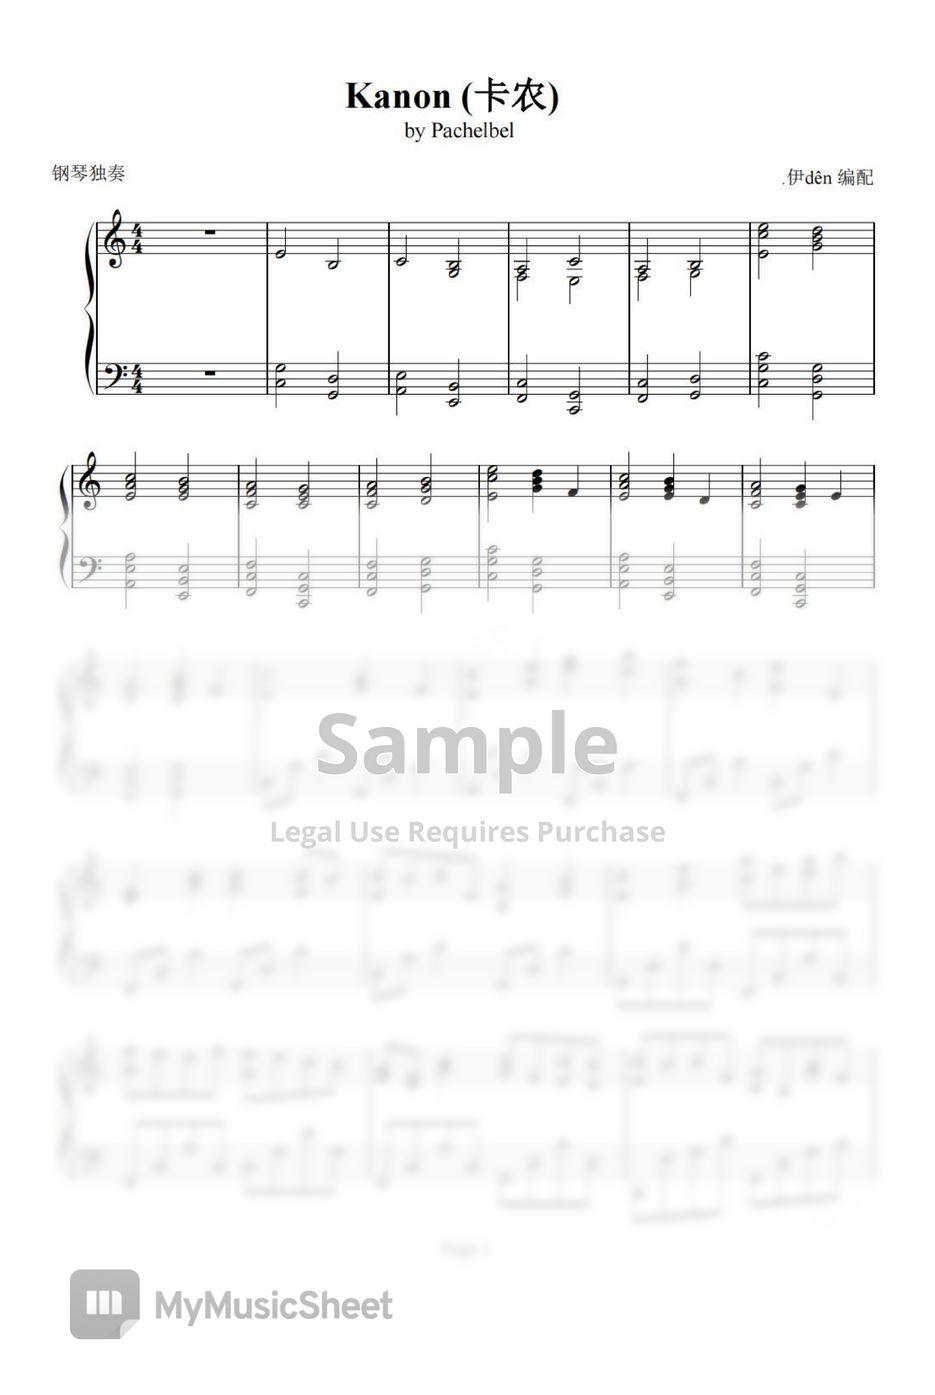 Johann Pachelbel - Pachelbel Canon in C Major by LearnPiano